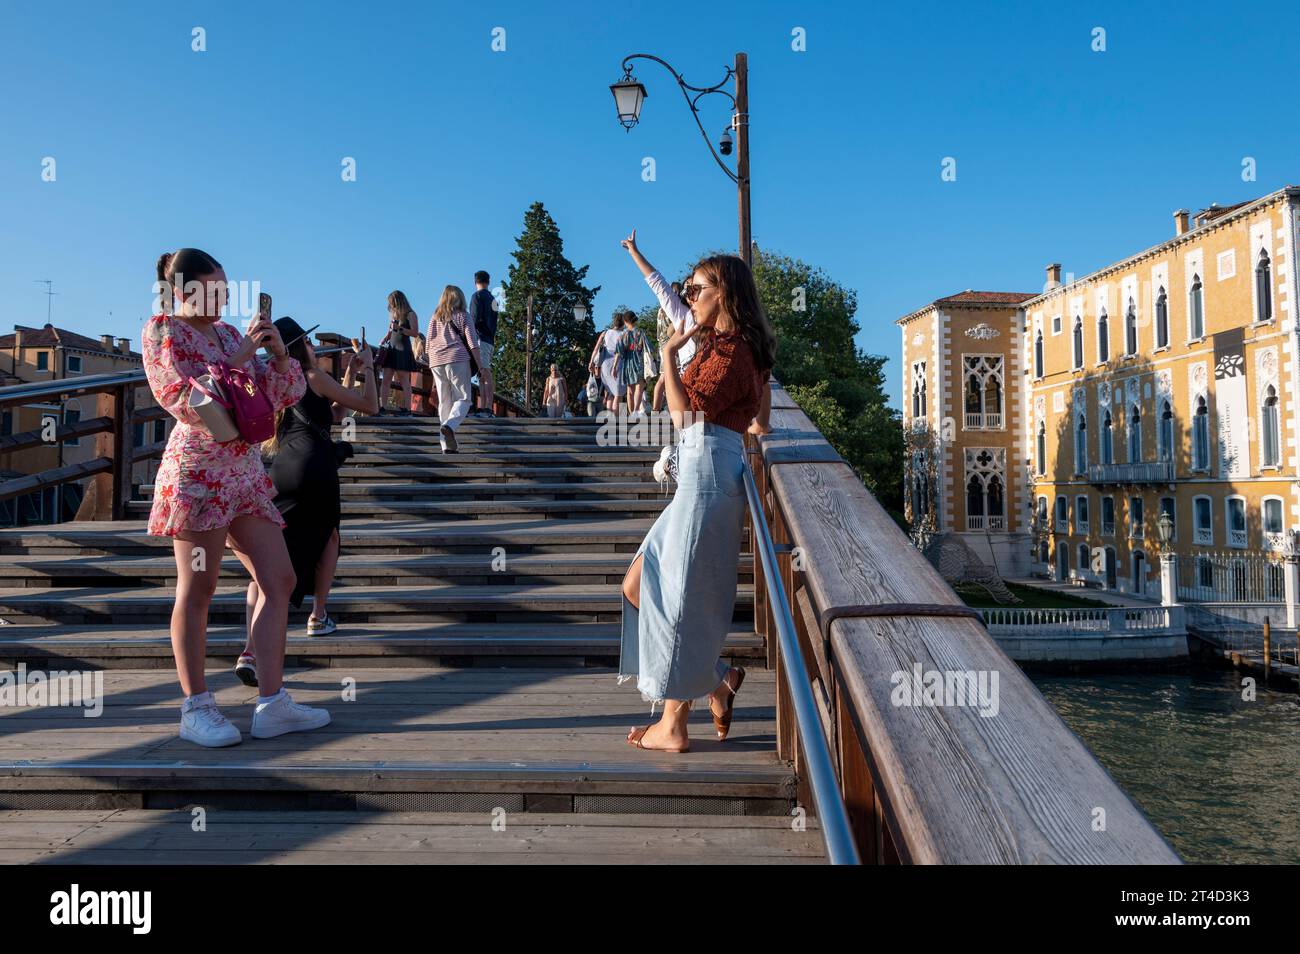 Selfies zu machen scheint ein beliebter Zeitvertreib zu sein, besonders bei jungen Touristen in Venedig in der venezianischen Region Norditalien. Stockfoto